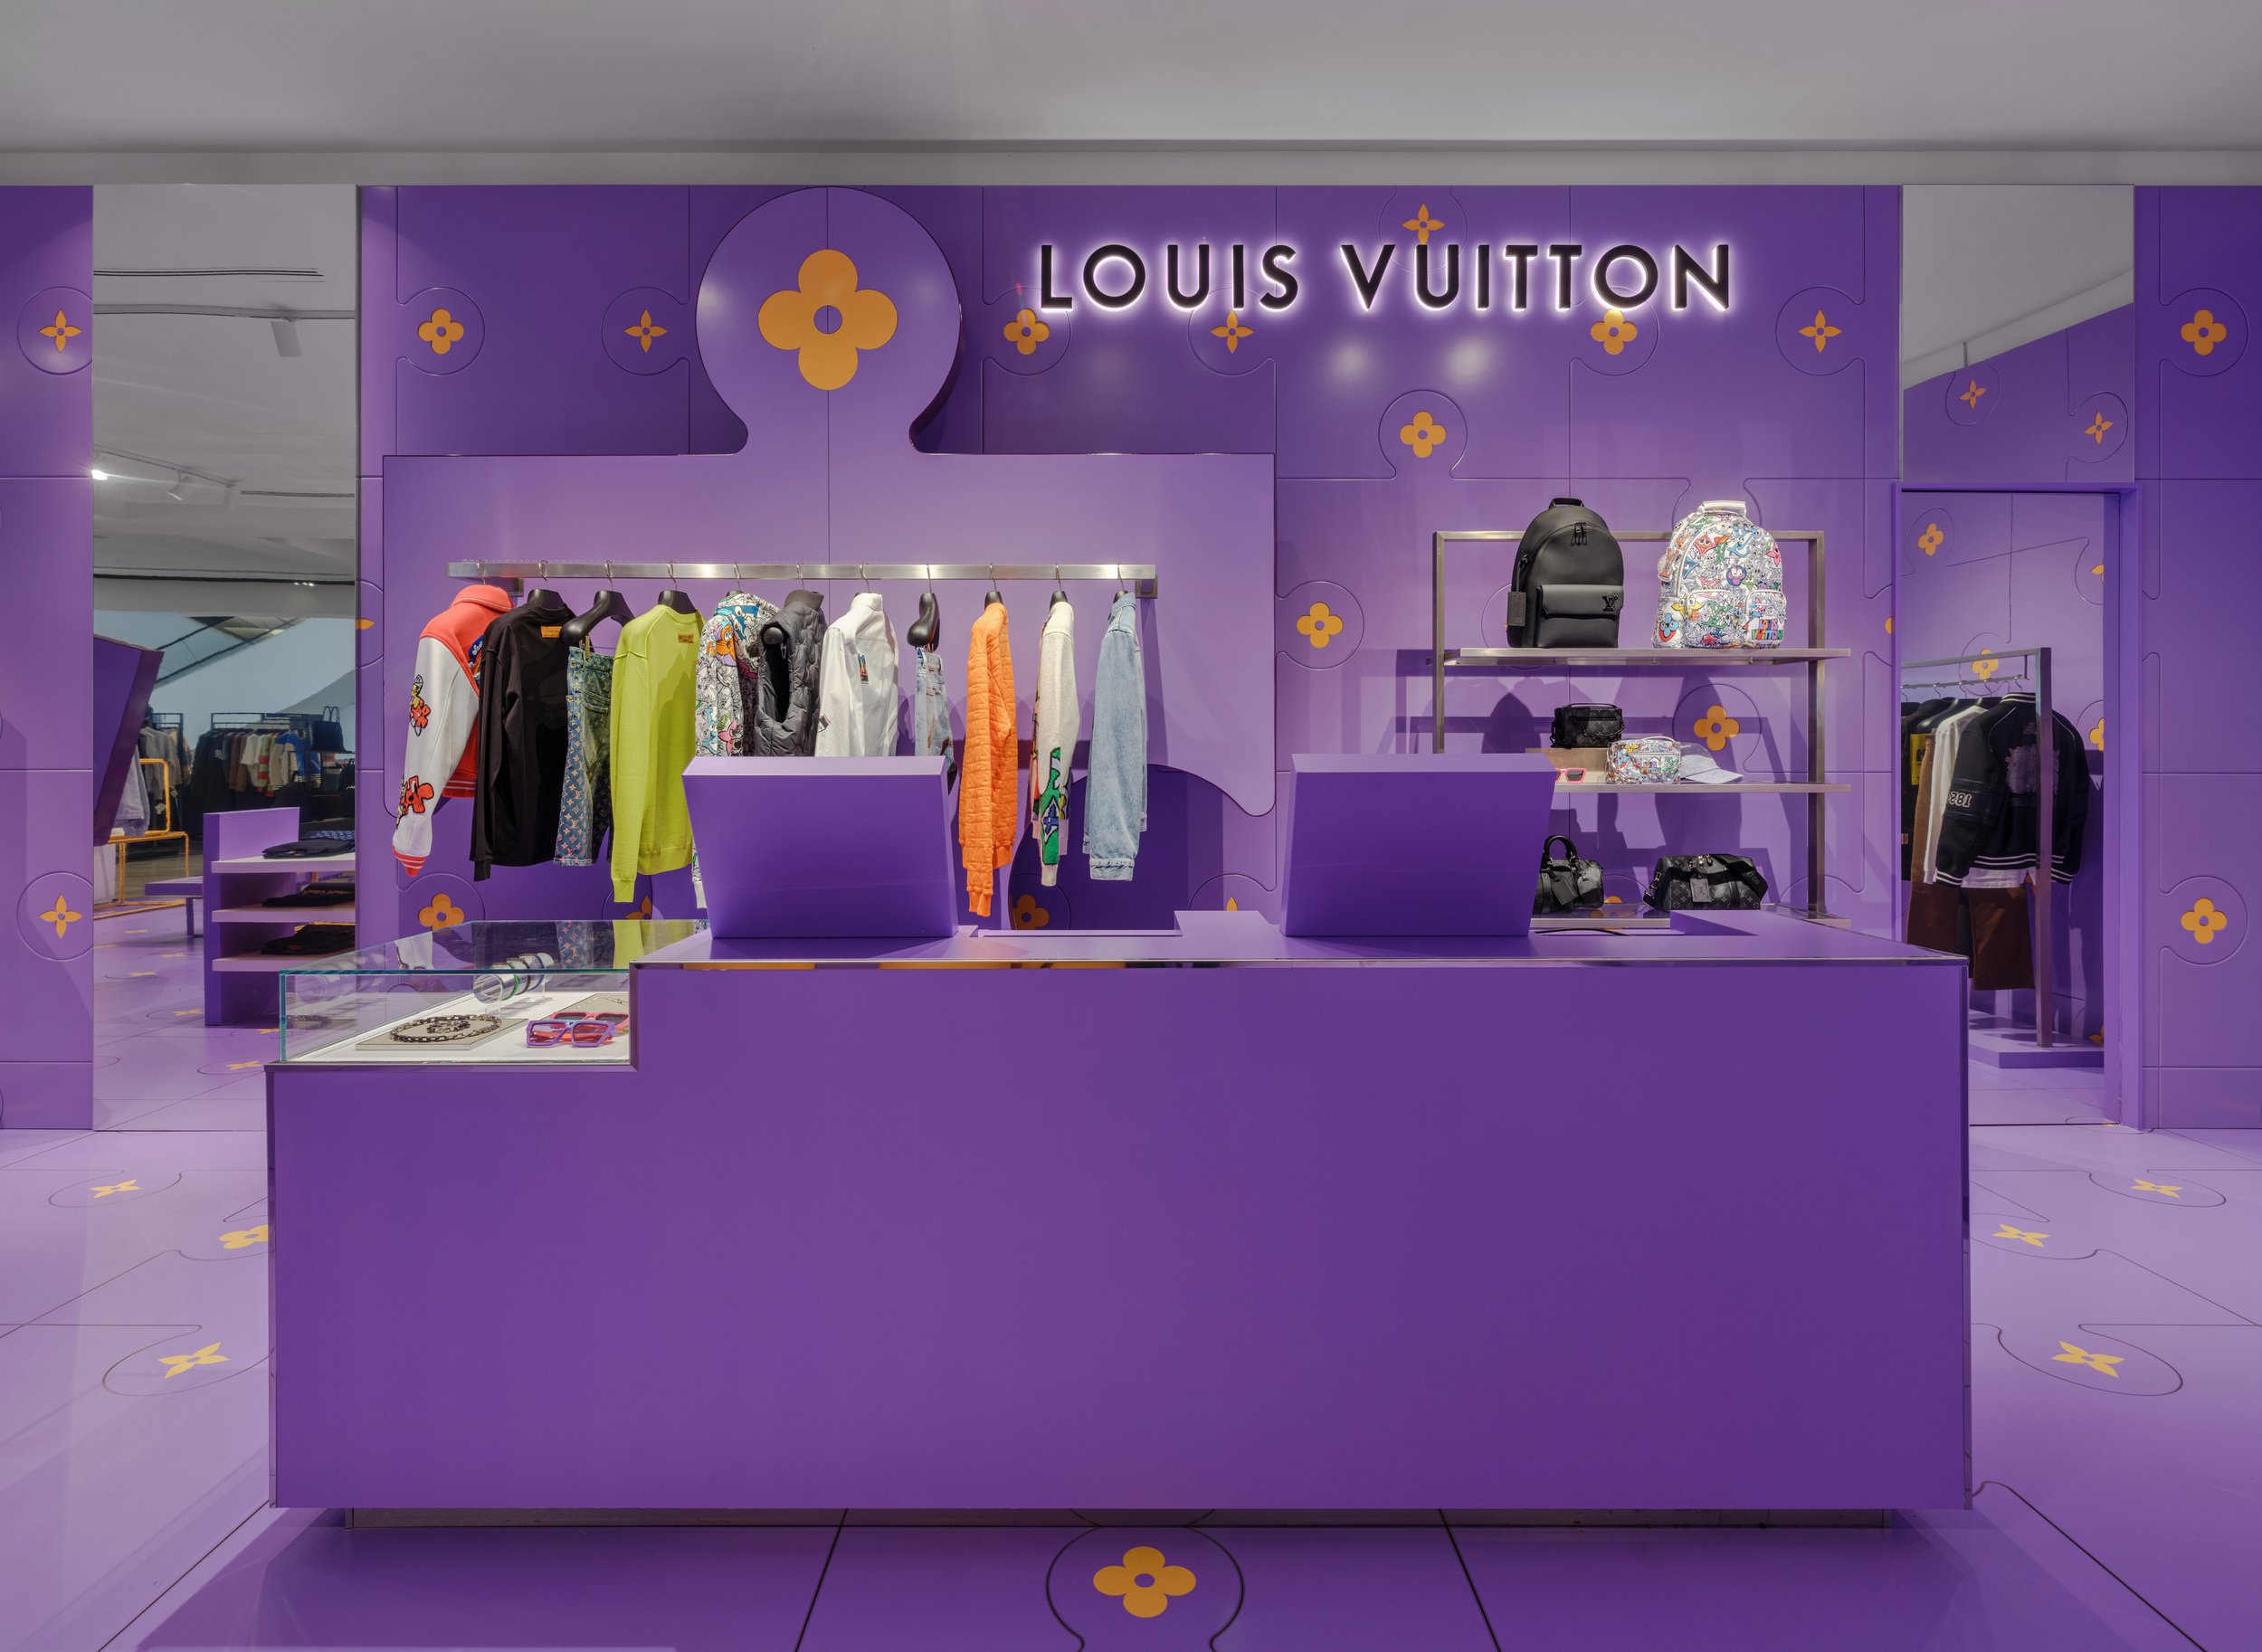 Louis Vuitton shop at Selfridges department store in London